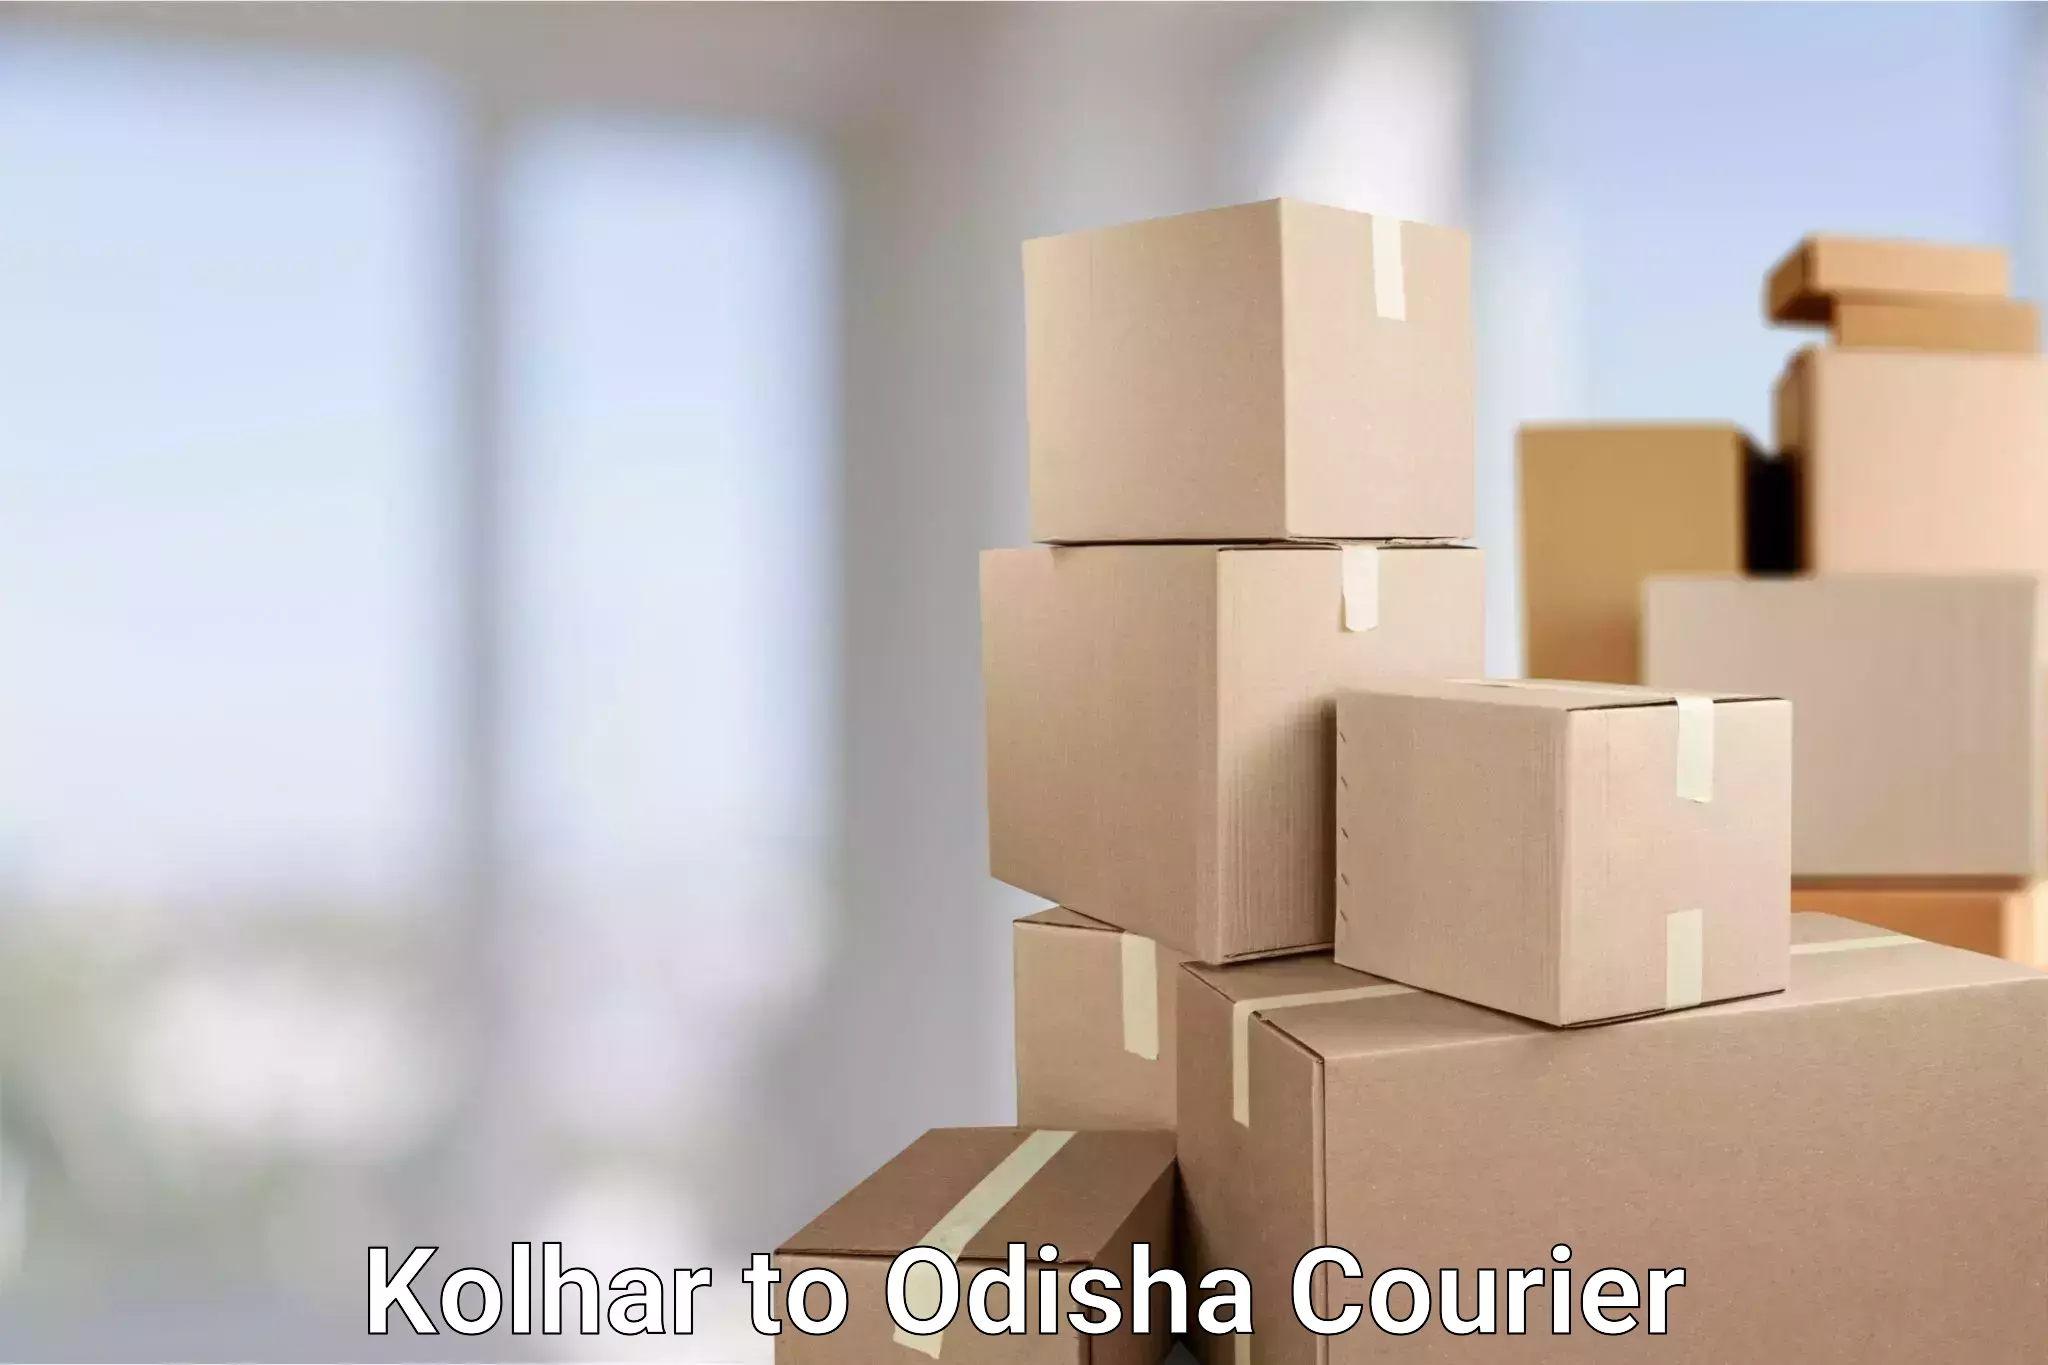 Cash on delivery service Kolhar to Sohela